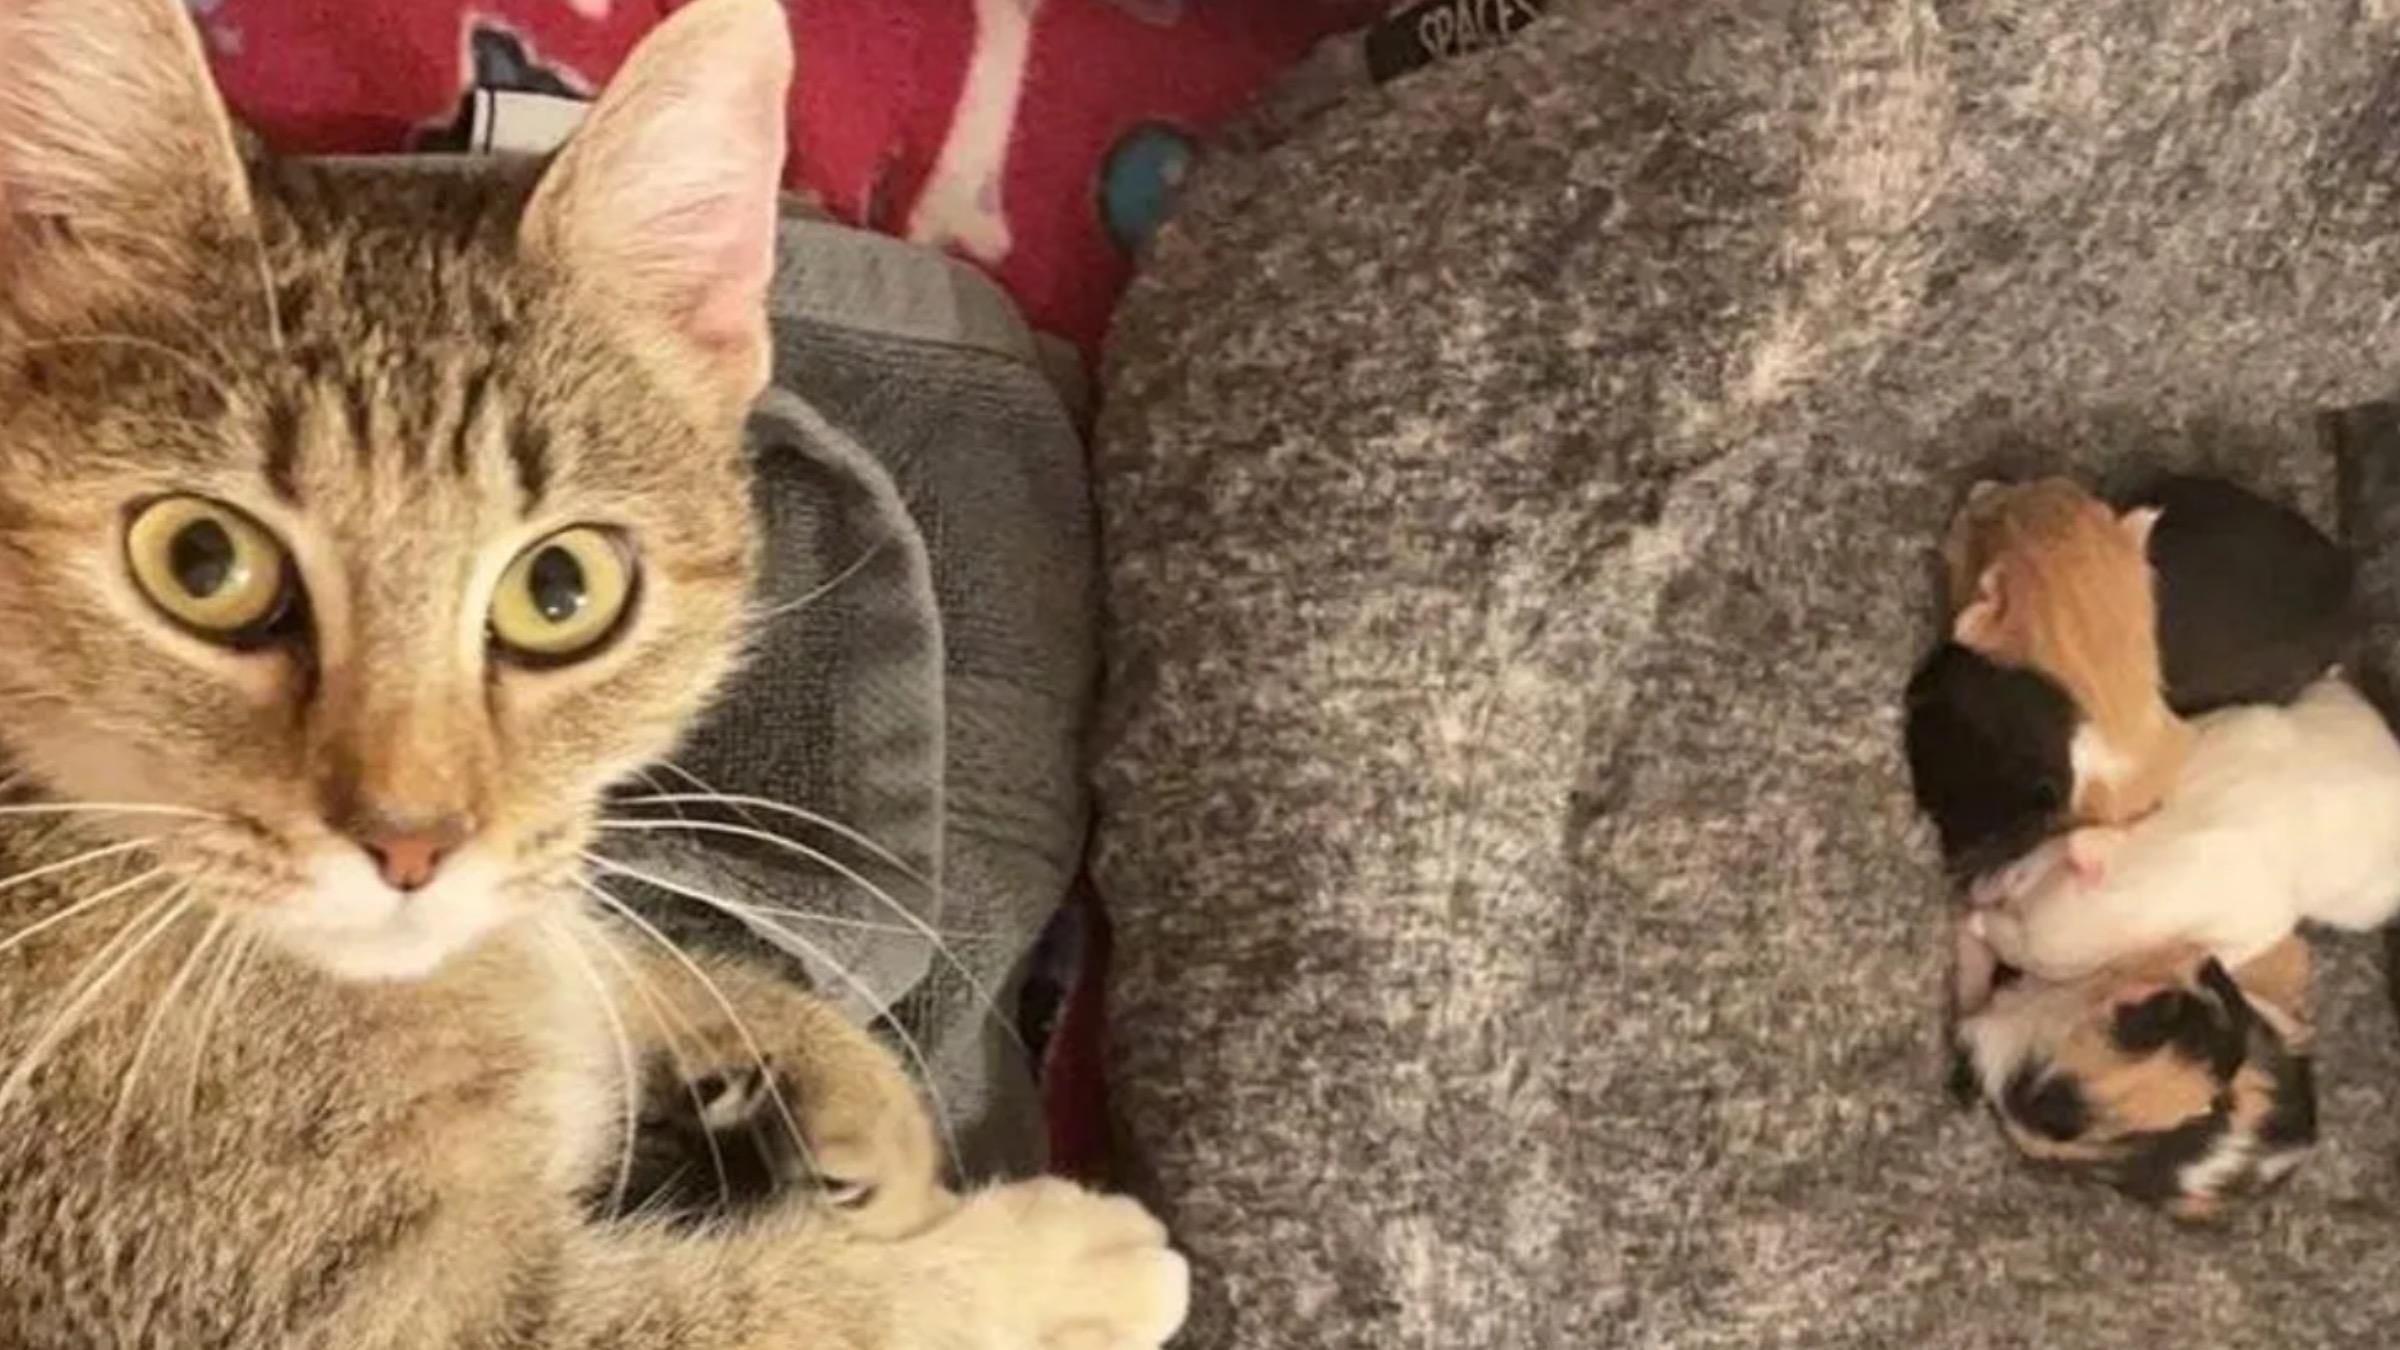 "Пожалуйста, помогите нам": женщина спасла беременную кошку, которую бросили хозяева - Pets